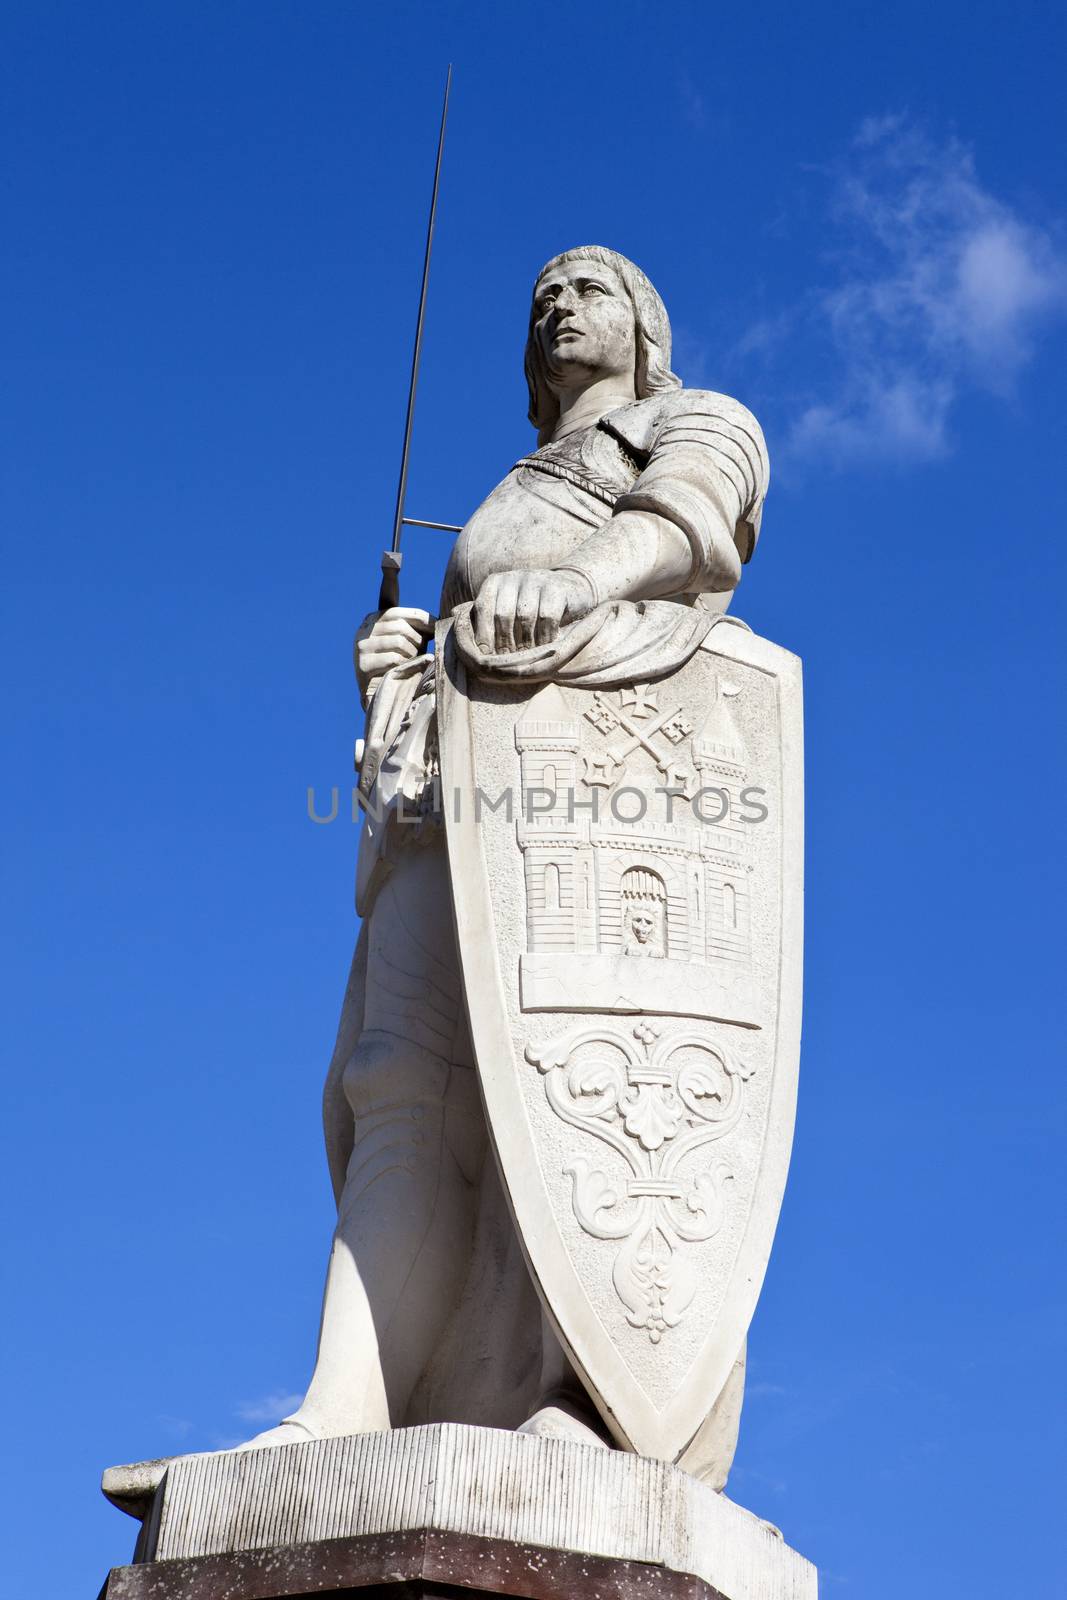 Statue of Saint Roland in Riga, Latvia.